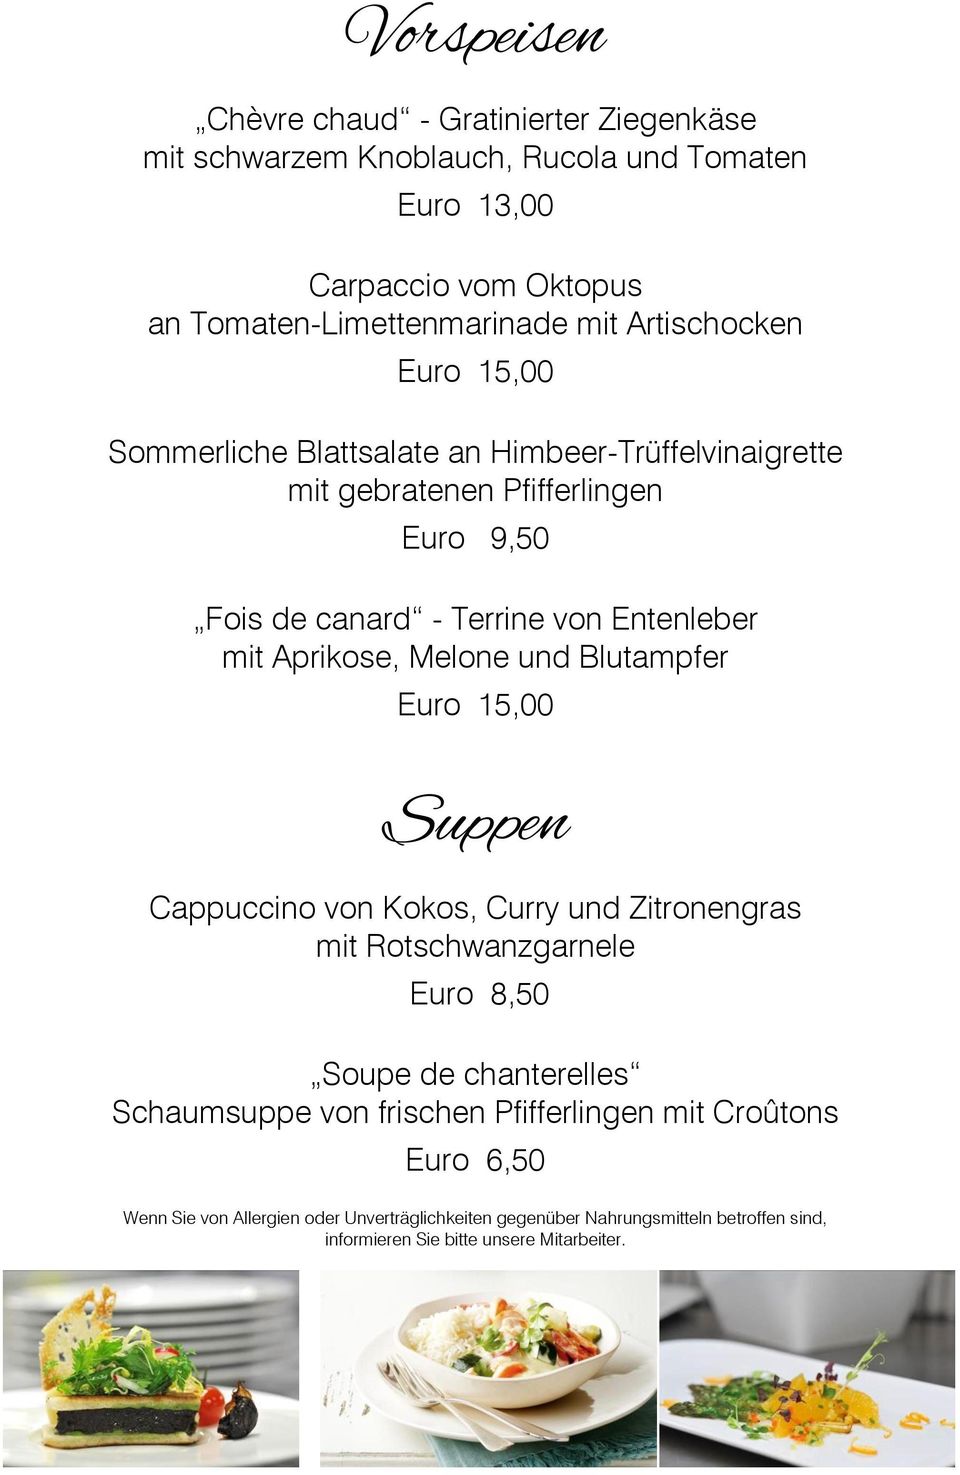 Pfifferlingen Euro 9,50 Fois de canard - Terrine von Entenleber mit Aprikose, Melone und Blutampfer Euro 15,00 Suppen Cappuccino von